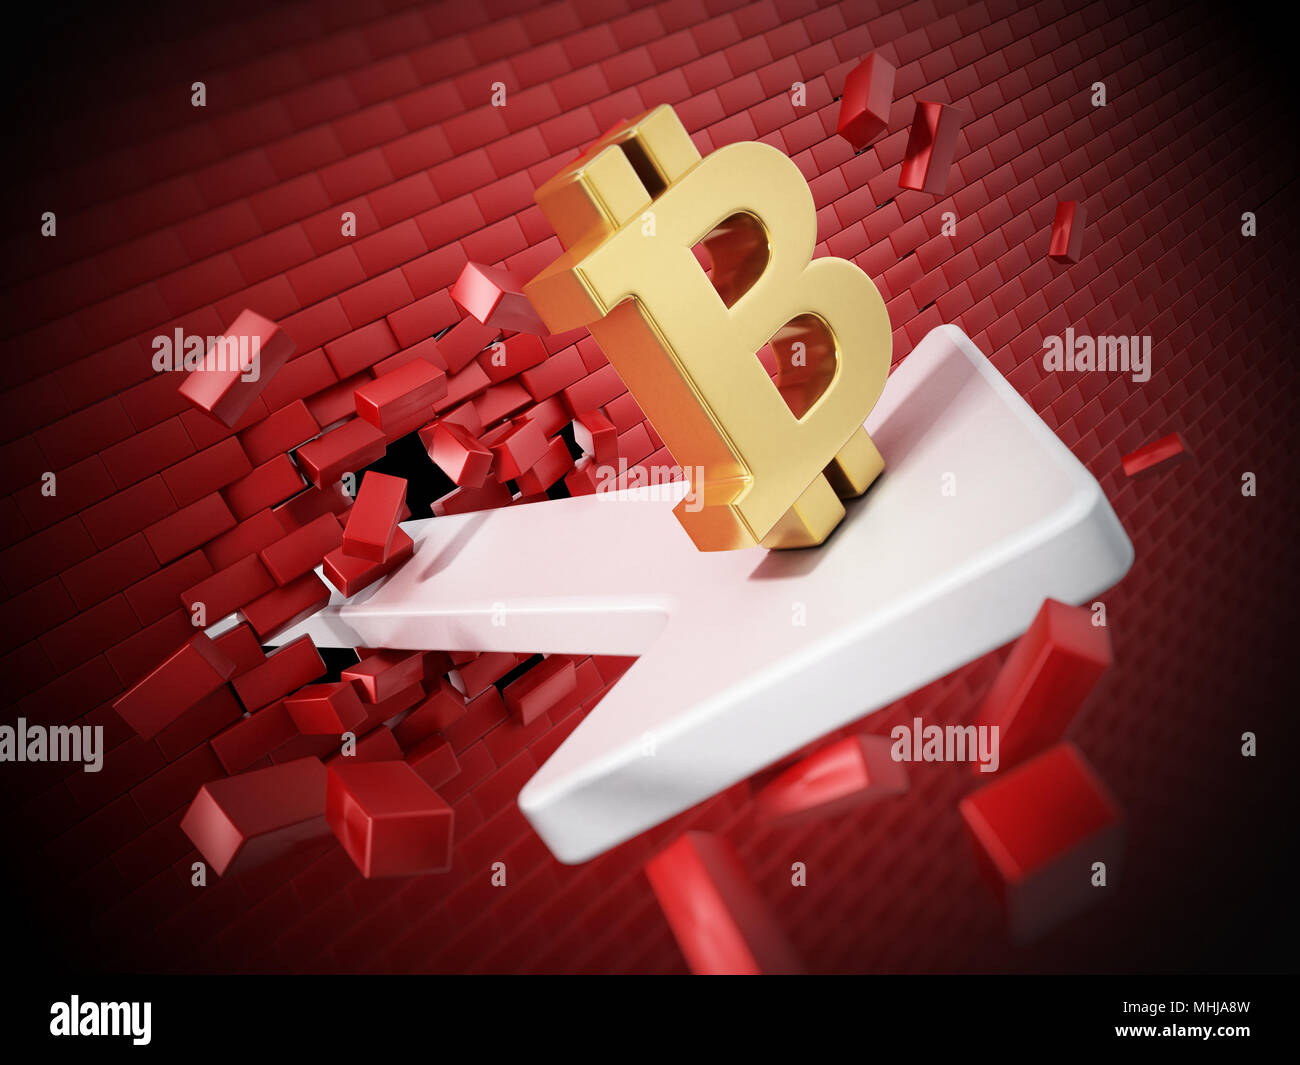 Símbolo Bitcoin en la flecha la destrucción del muro. Ilustración 3D. Foto de stock